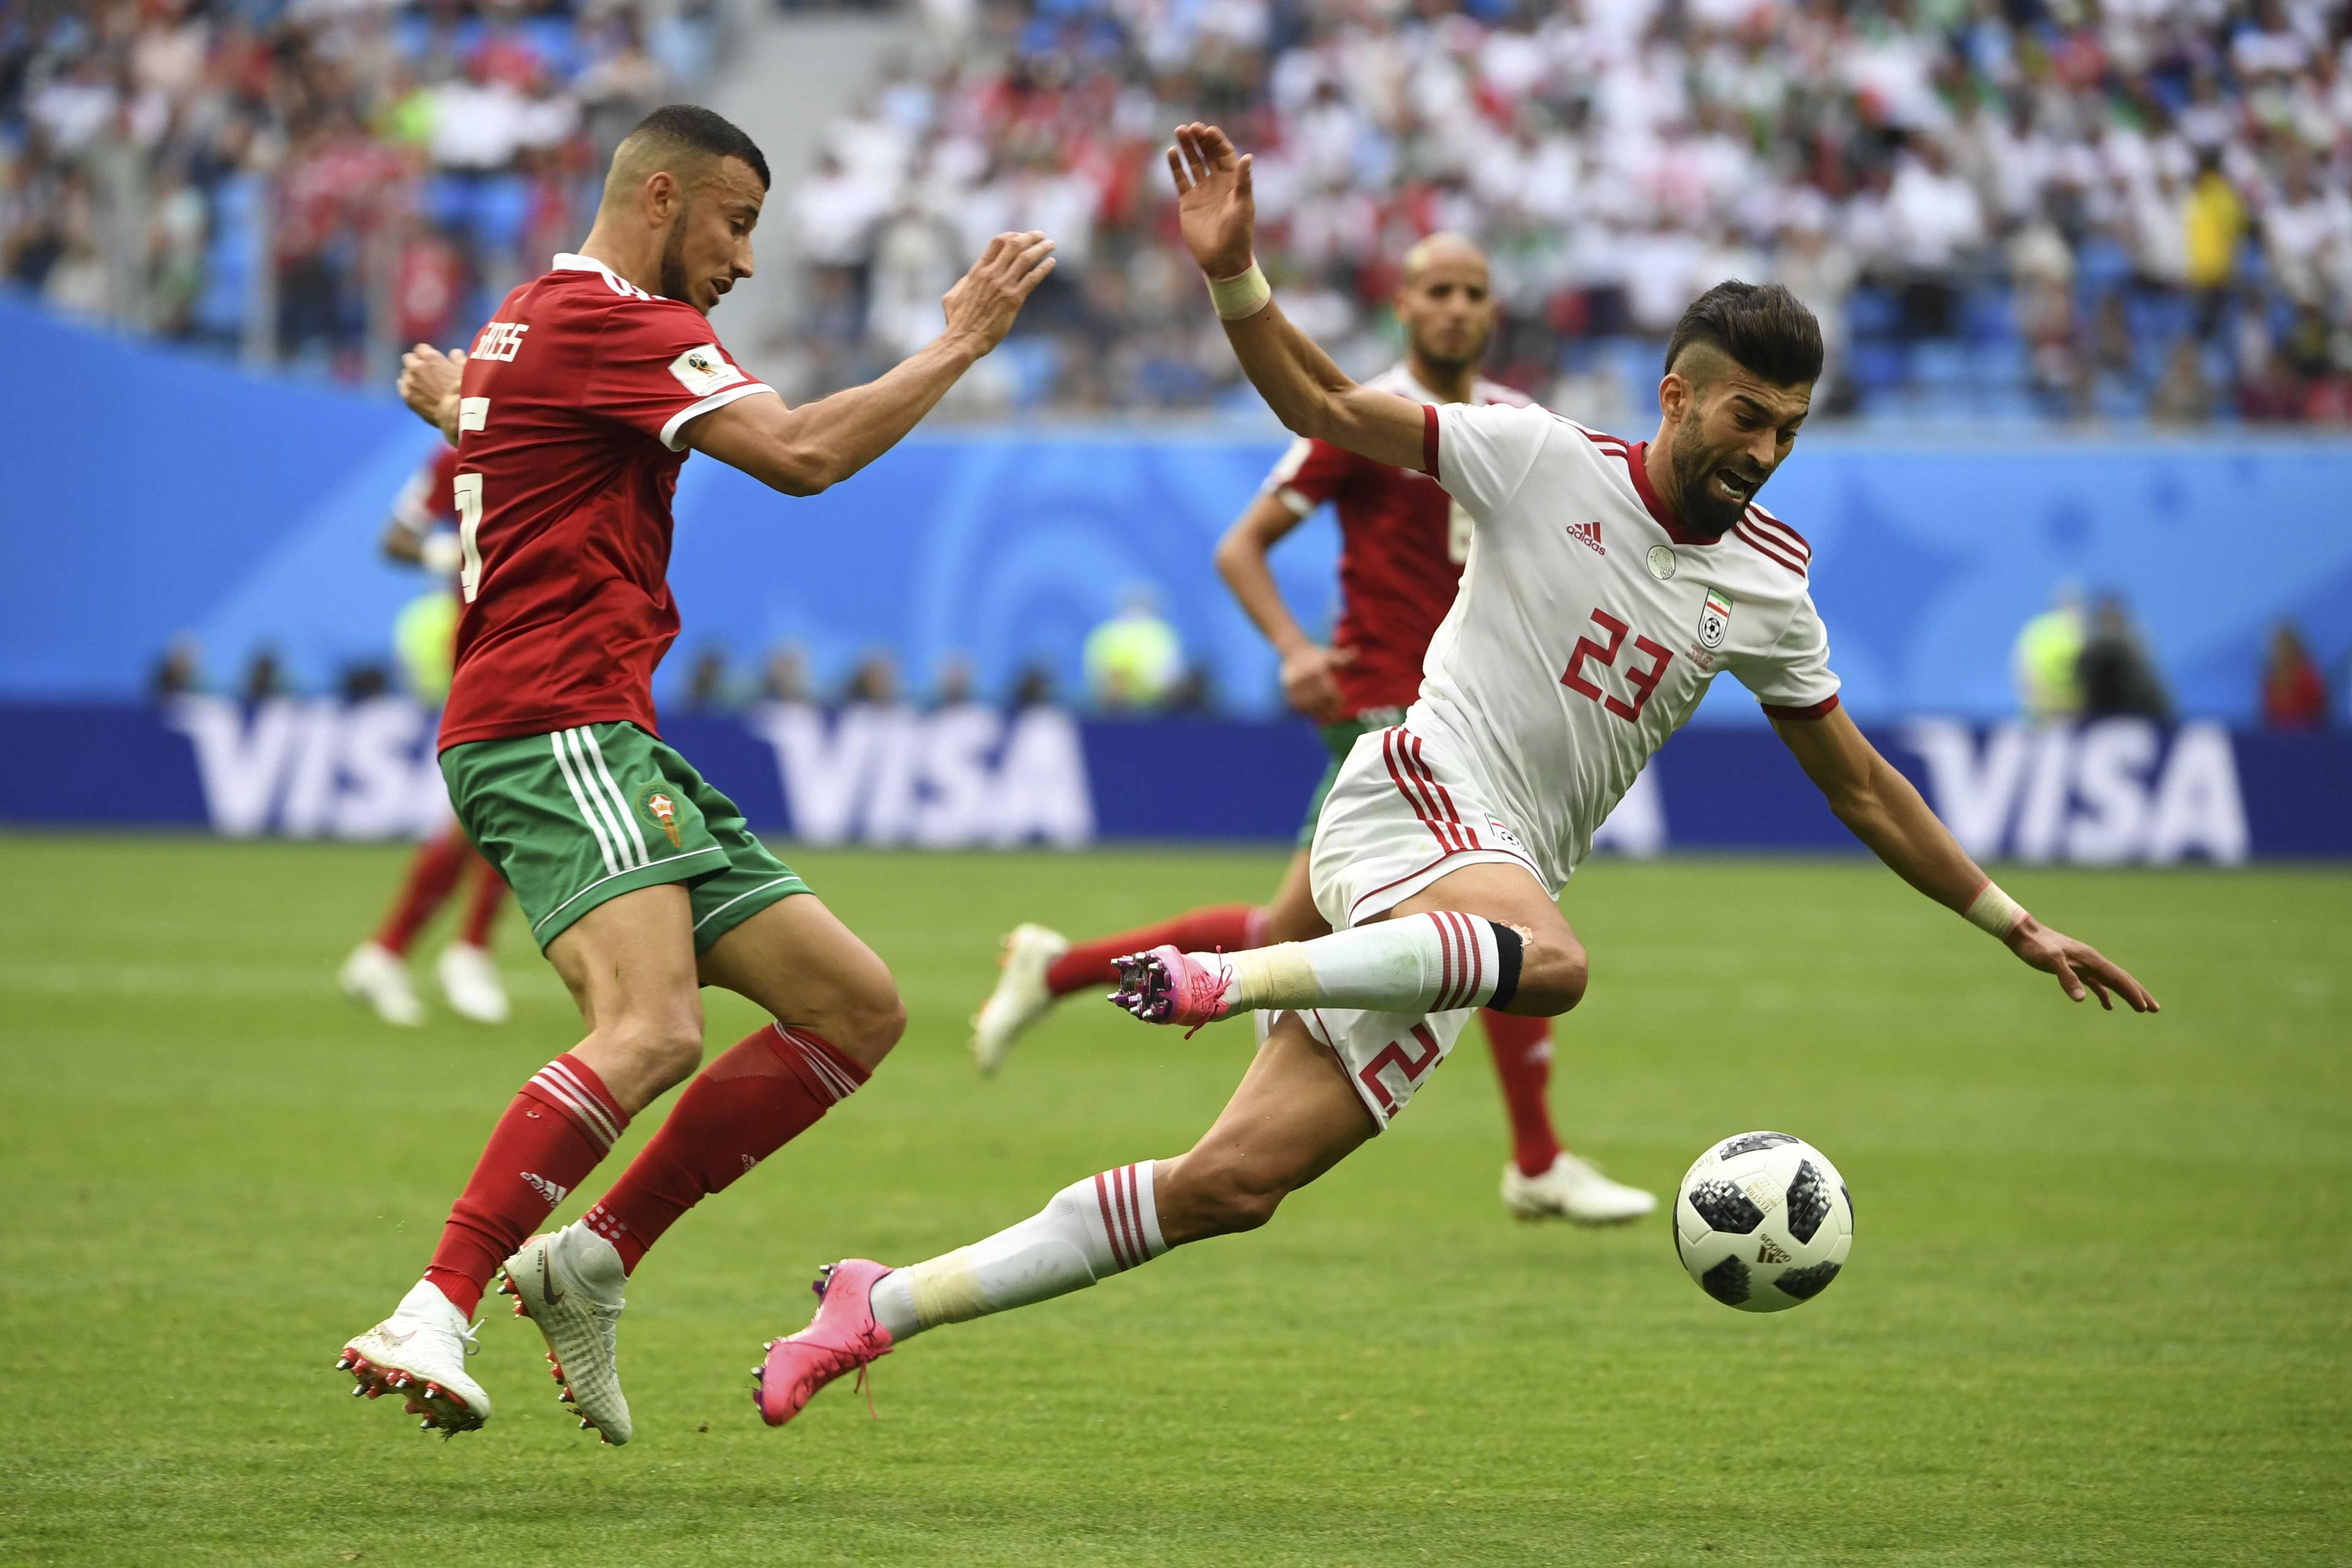 Šok za Maroko u 95. minutu – autogol i pobjeda Irana poslije 20 godina!